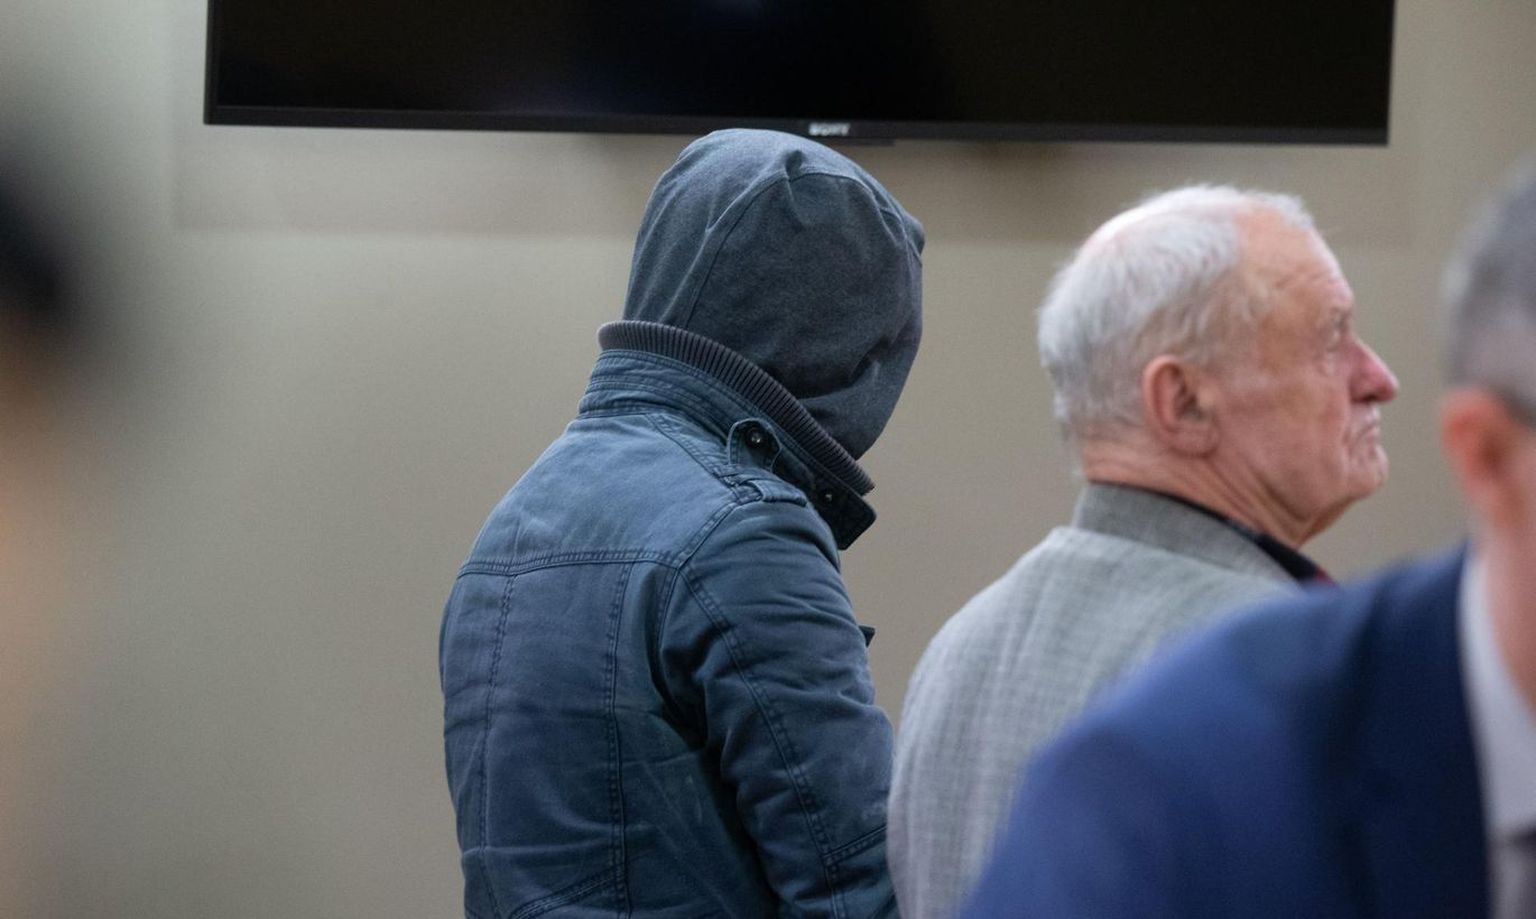 Одного из членов банды арестовали в Тарту в ноябре 2018 года. Тогда он пришел в зал суда в капюшоне и всячески прятался от фотографа.